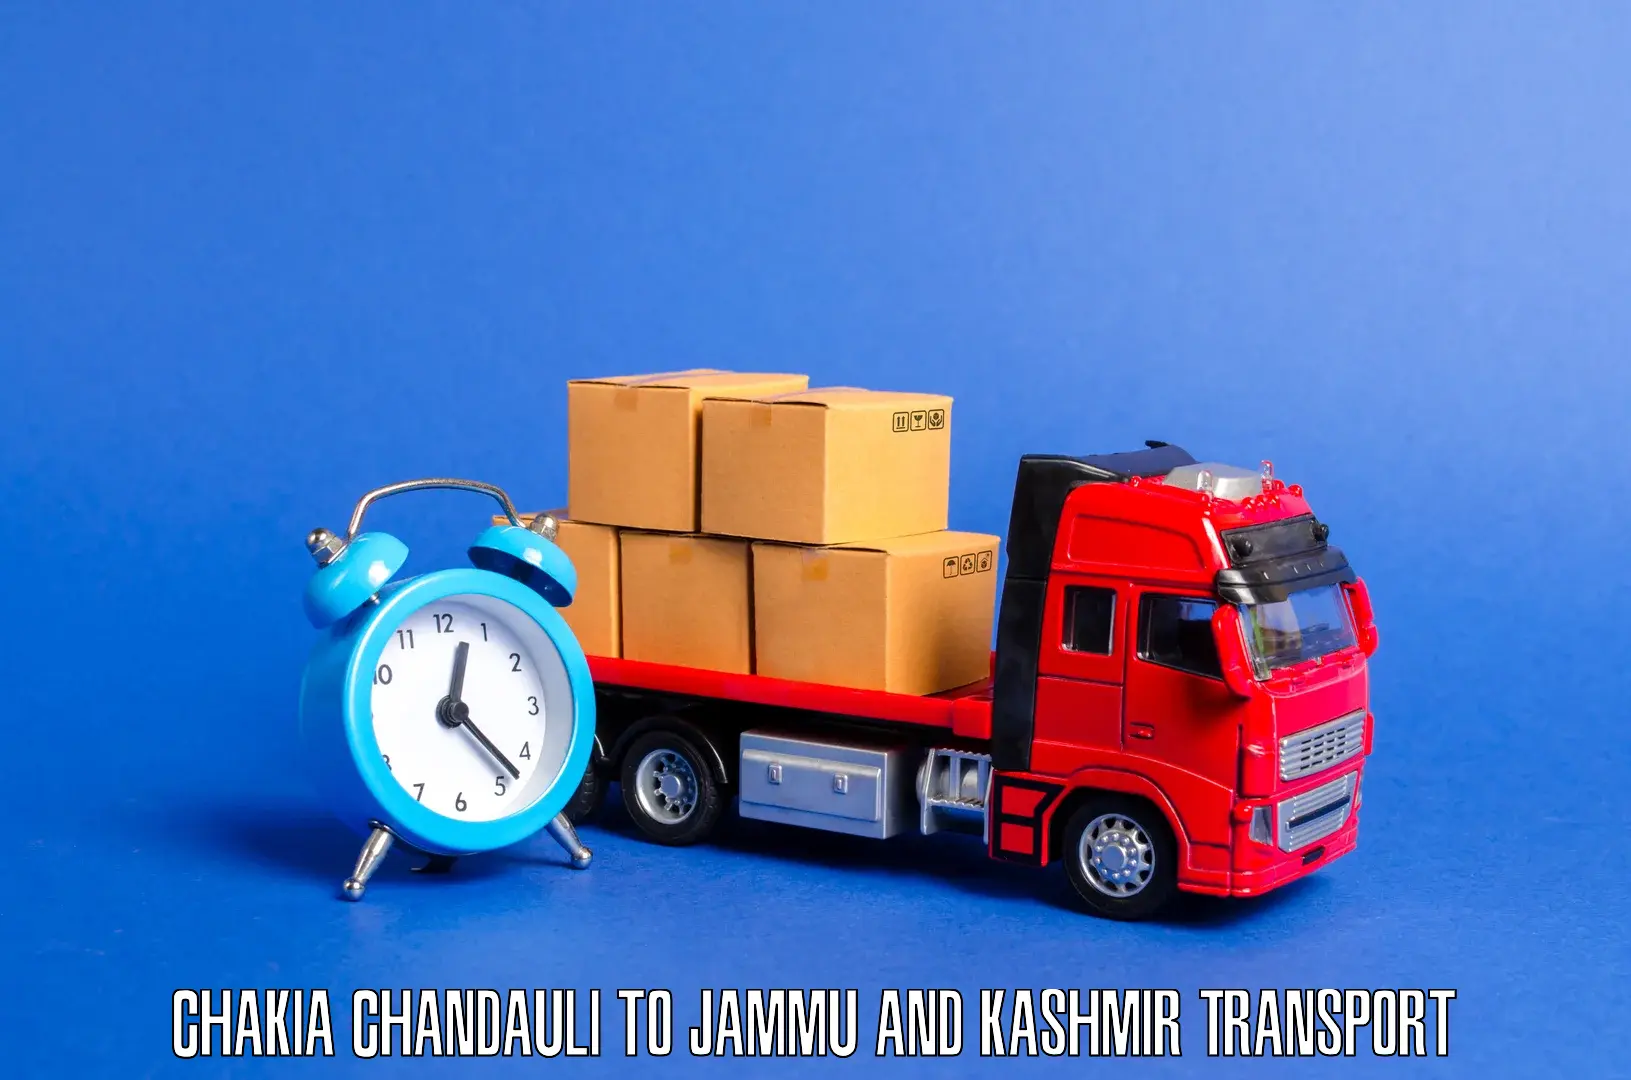 Lorry transport service Chakia Chandauli to University of Jammu